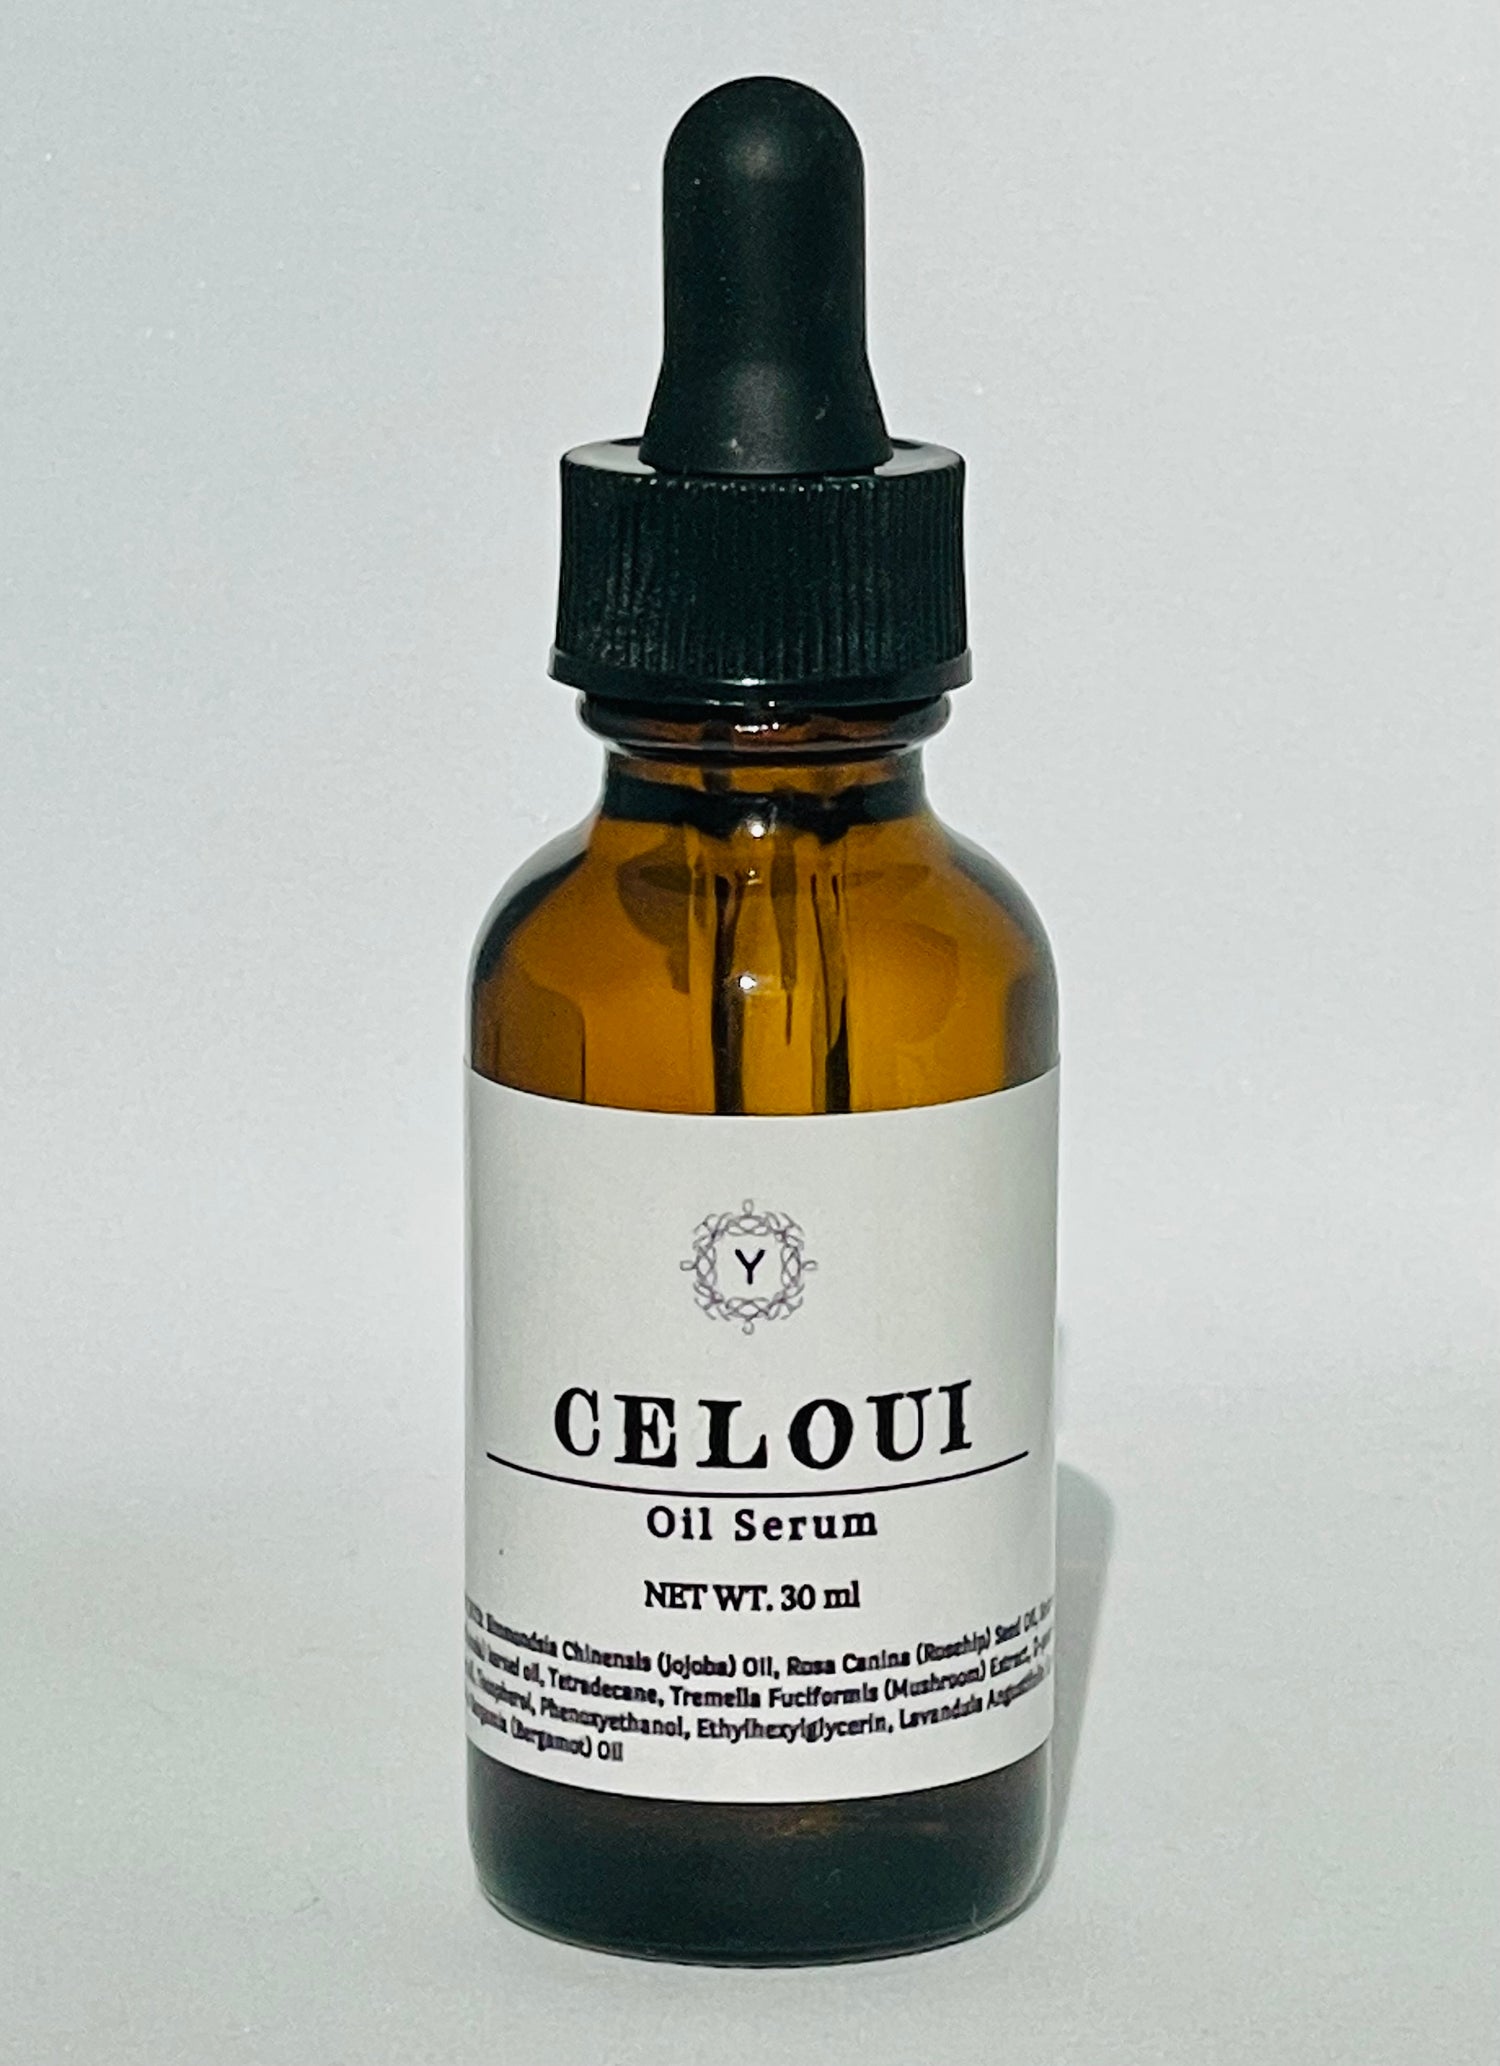 CELOUI Oil Serum - CELOUI Skincare